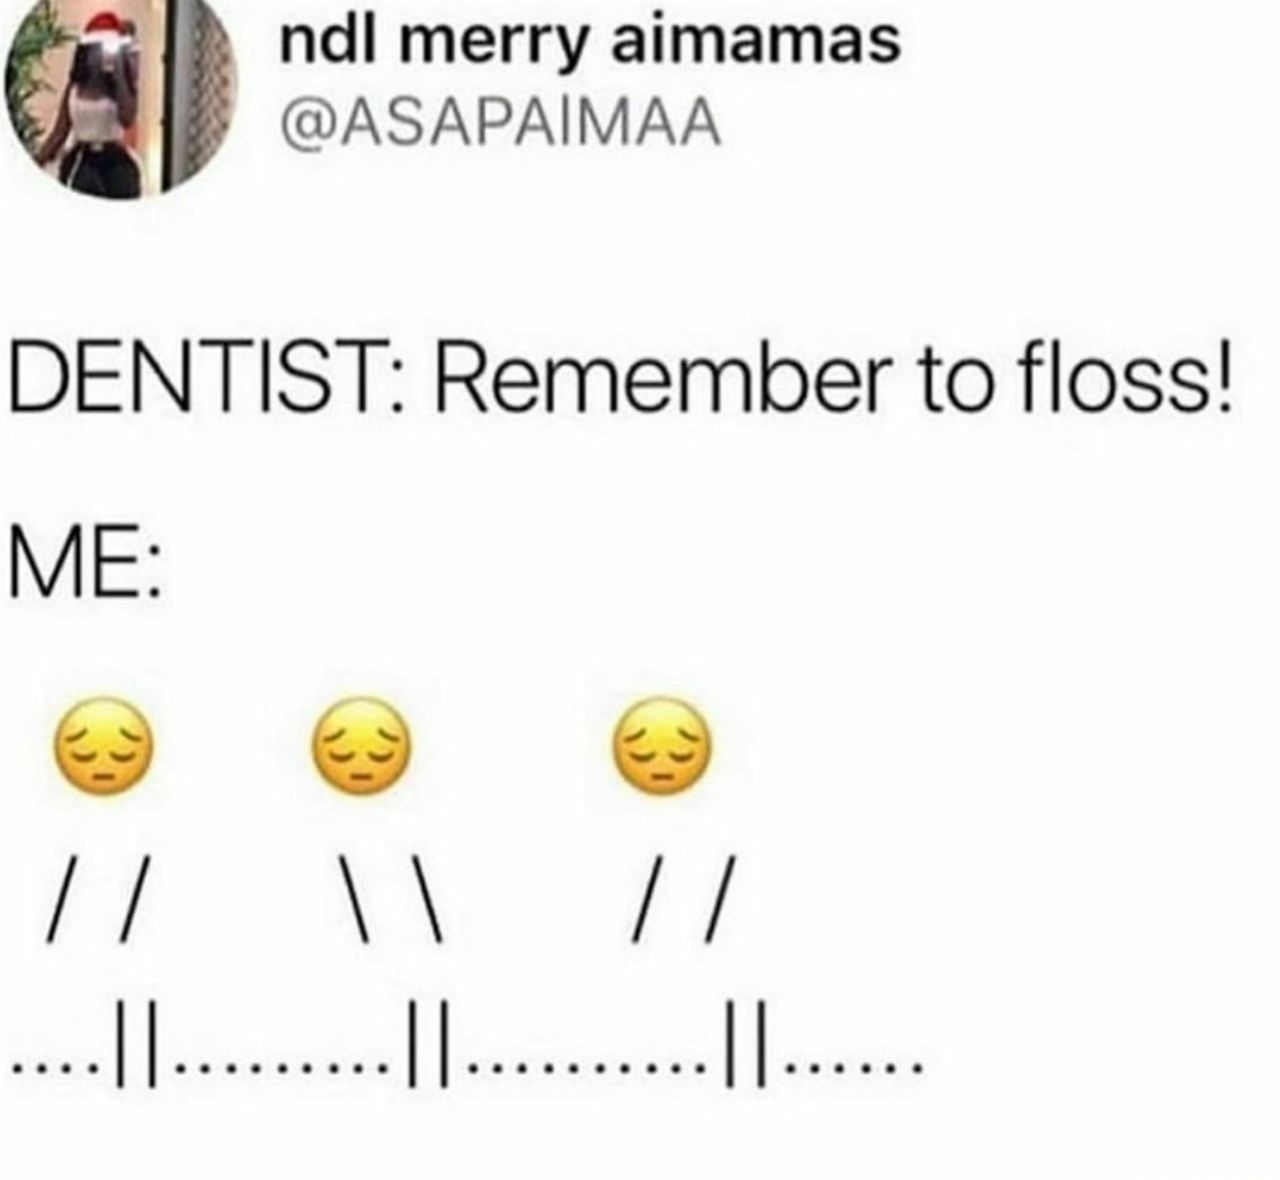 Remember to floss - meme